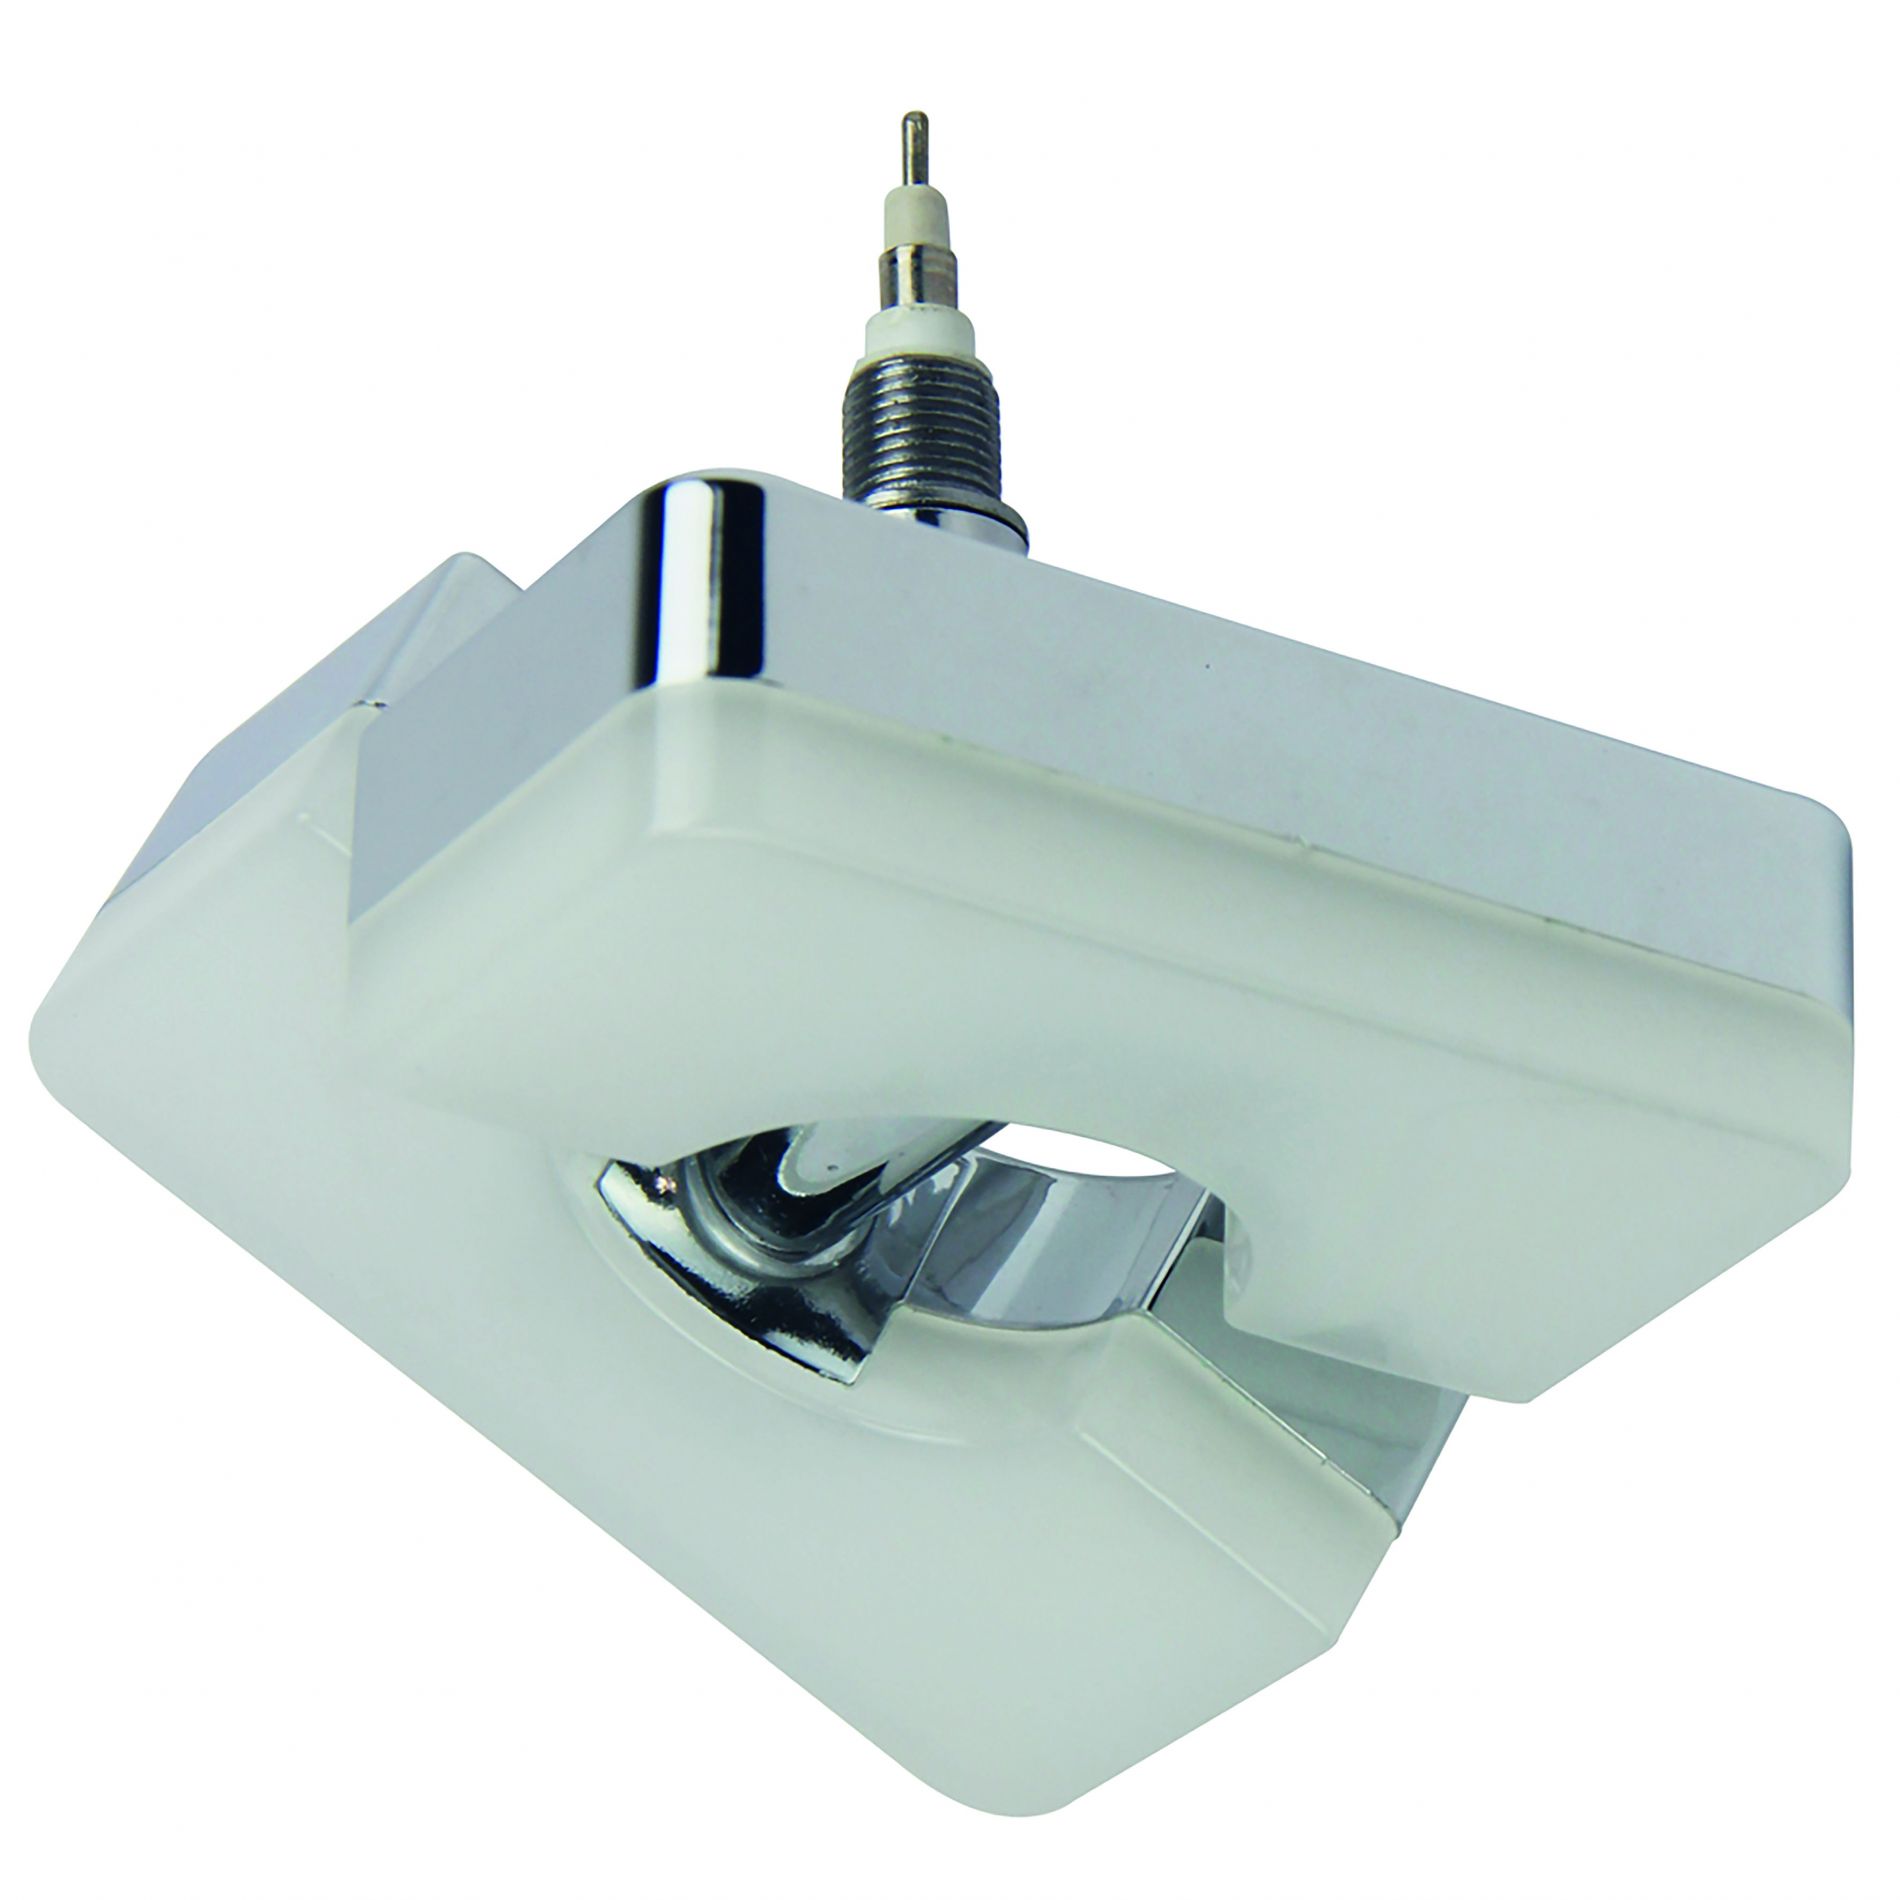 Diffuseur orientable LED carré REMIXLED argenté/blanc en métal/PVC